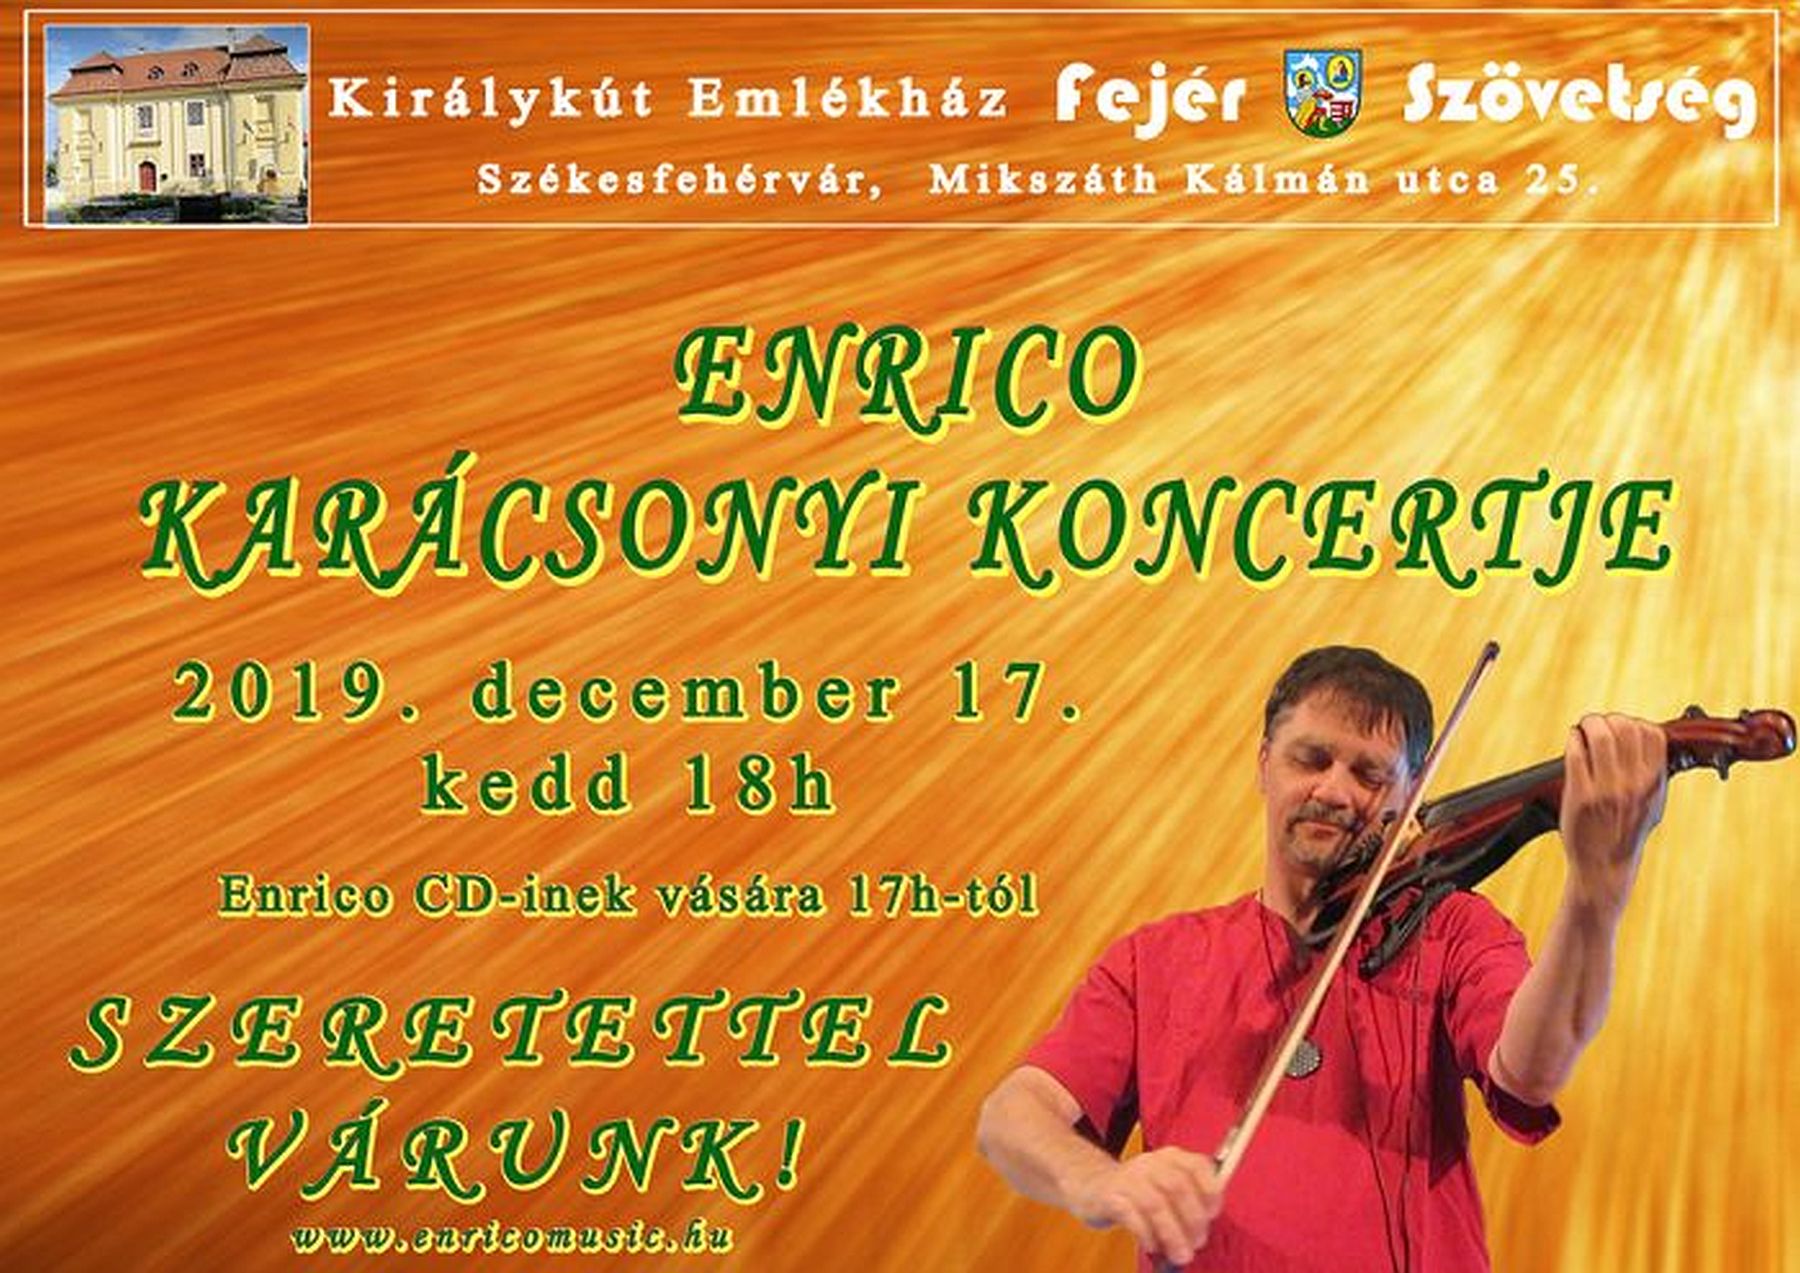 Enrico karácsonyi koncertje kedden a Királykút Emlékházban